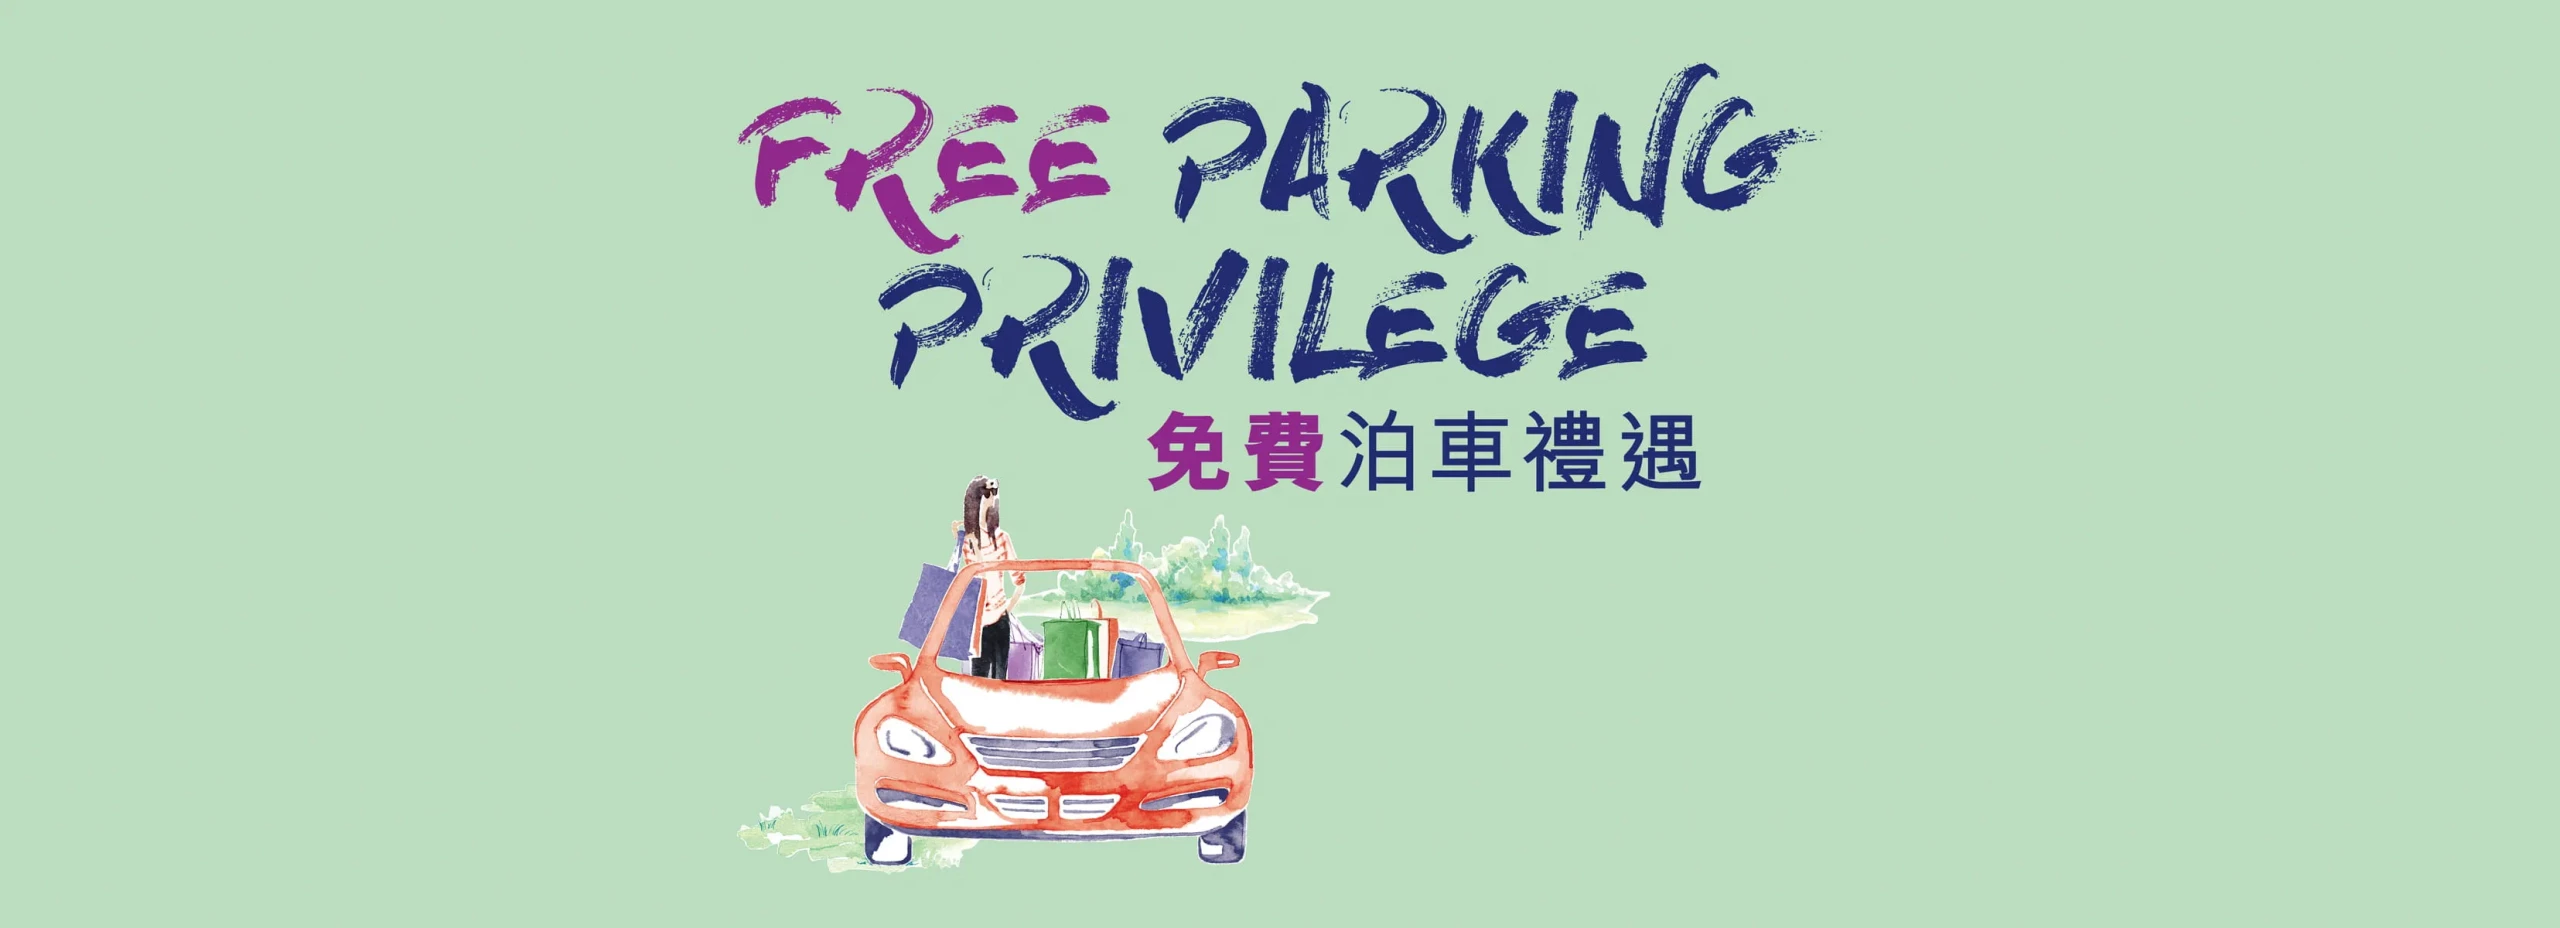 東薈城 Citygate 最新免費泊車優惠